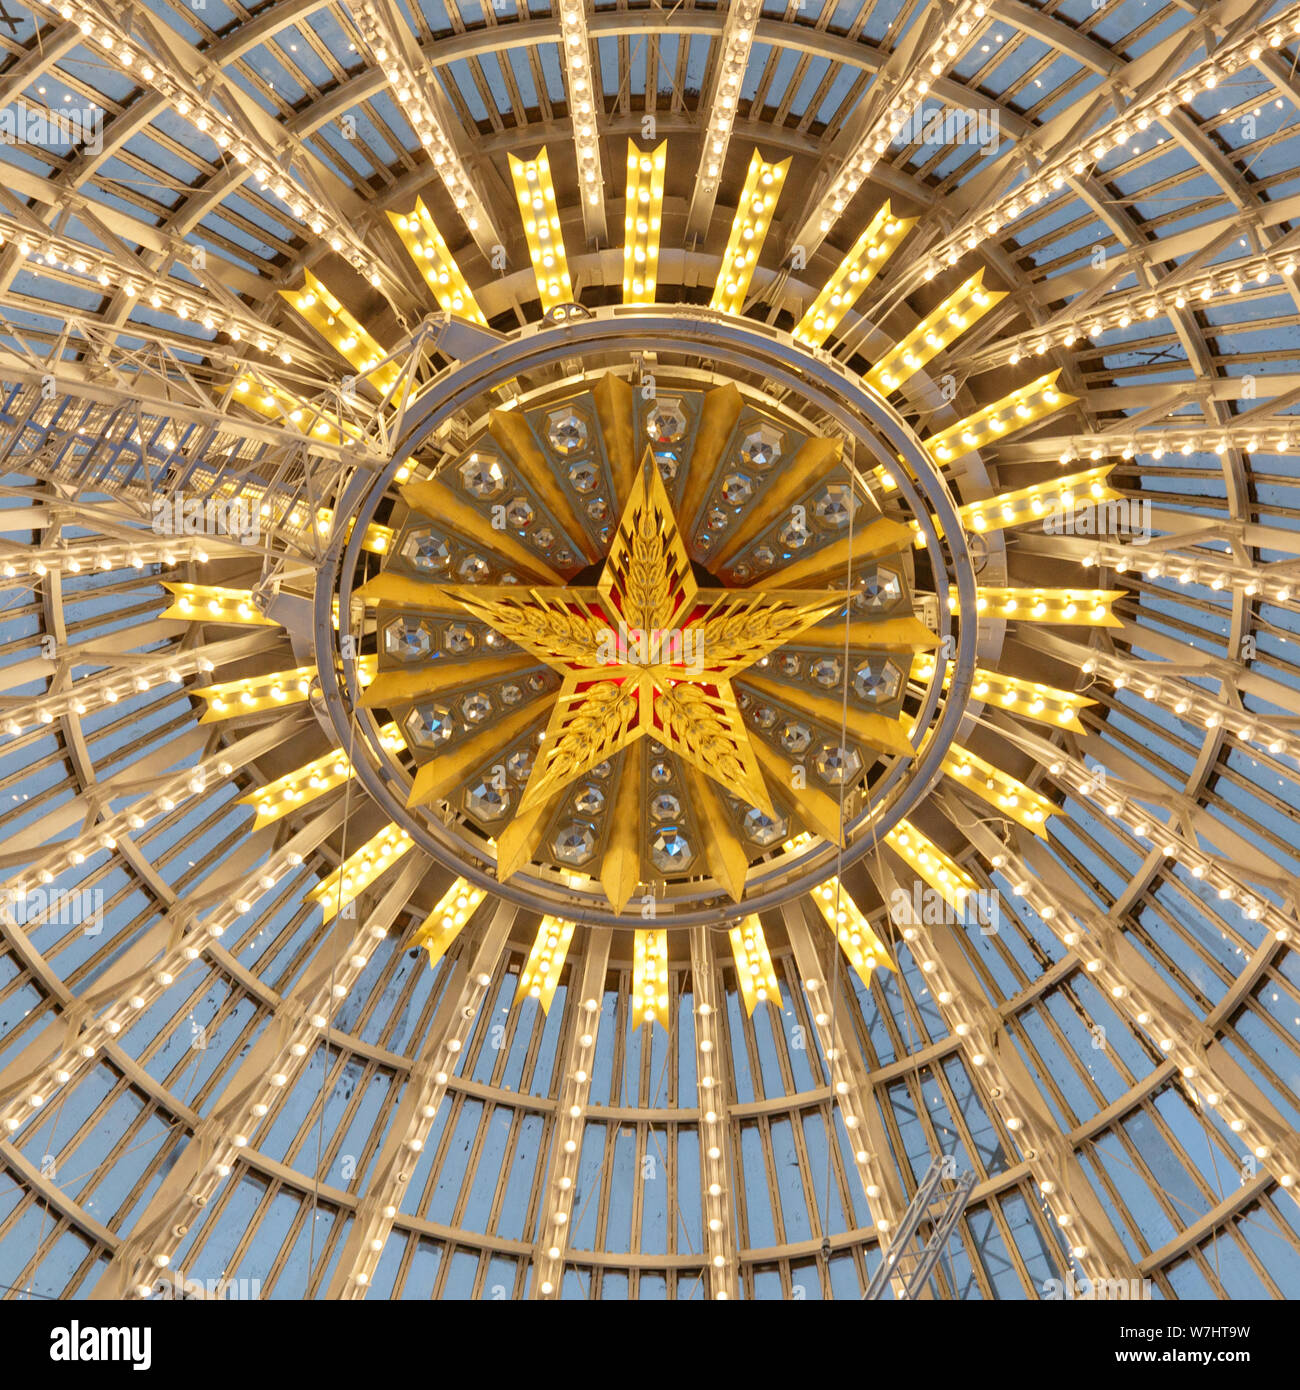 Moscou, Russie - le 28 novembre 2018 : dôme en verre de l'espace Cosmos pavilion à VDNH - Exposition des réalisations de l'économie nationale. Banque D'Images